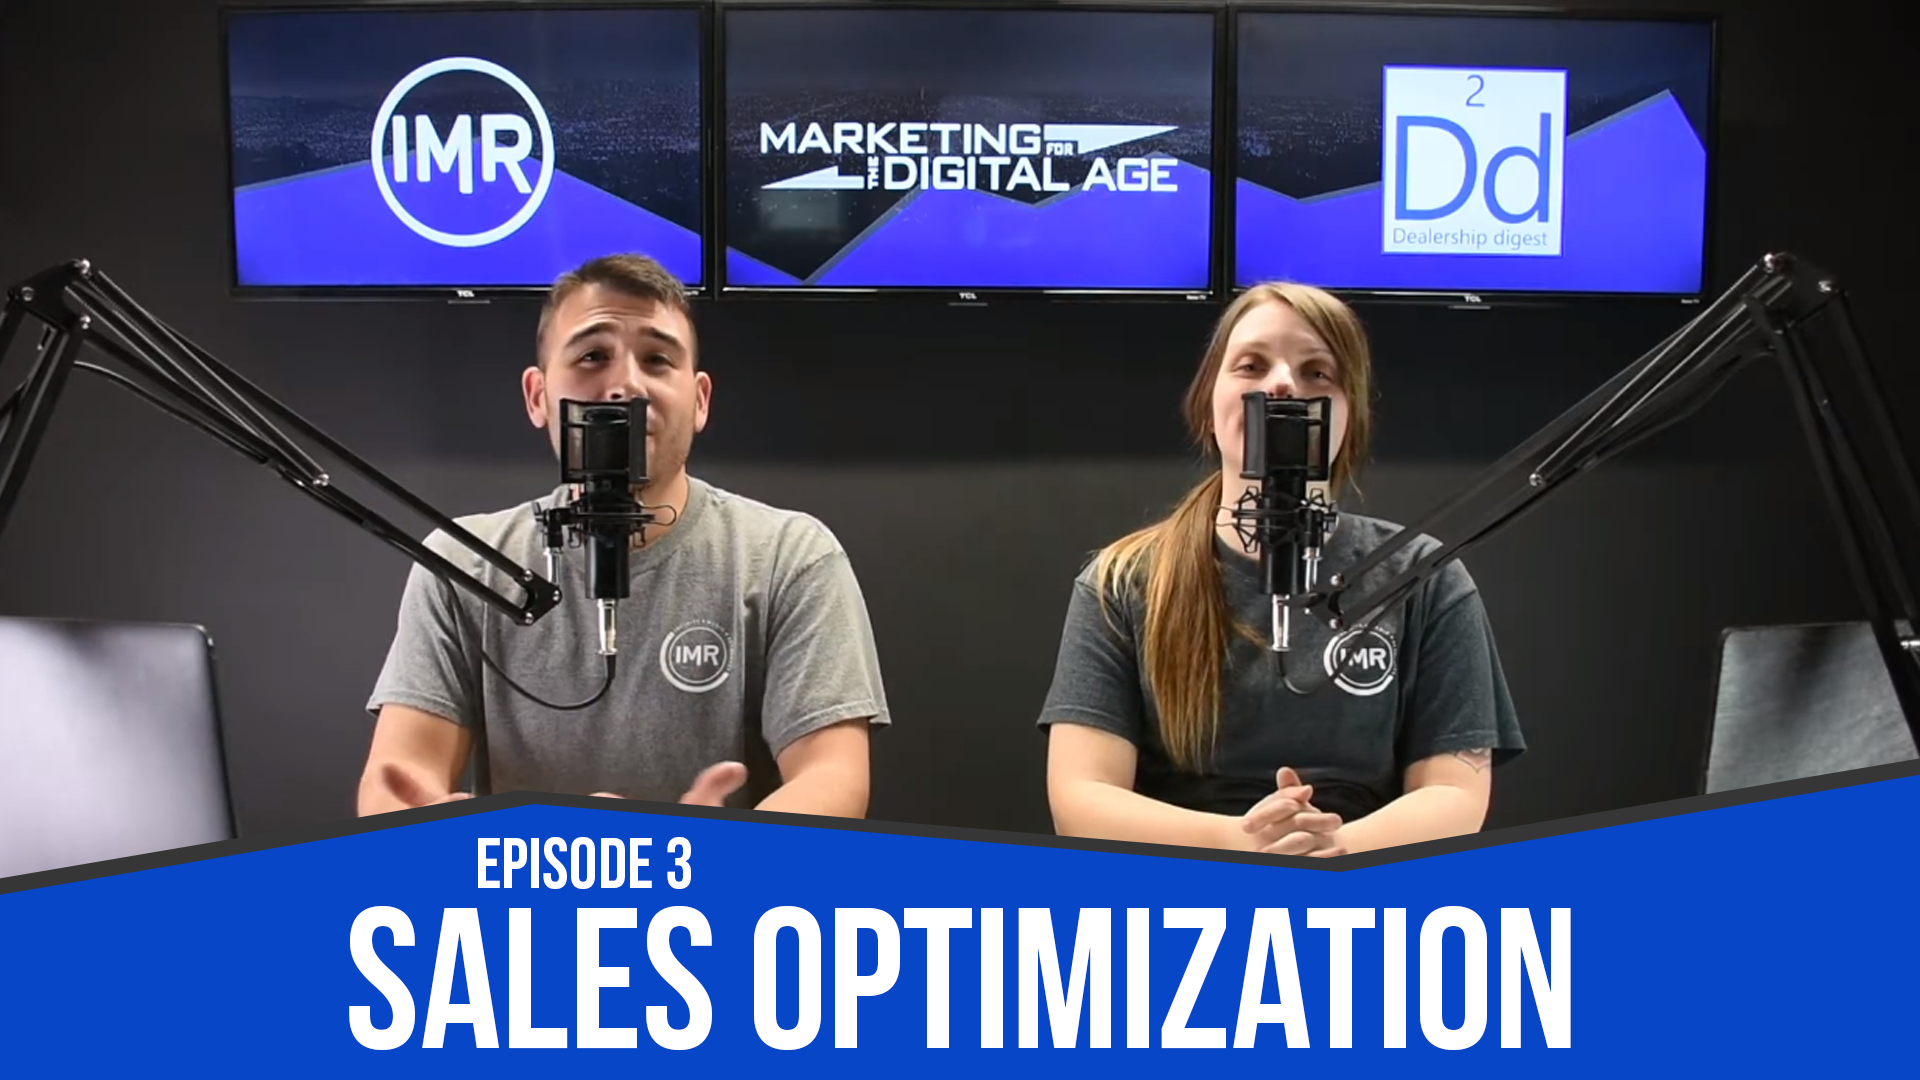 dealership digest episode 3 sales optimization for your dealership